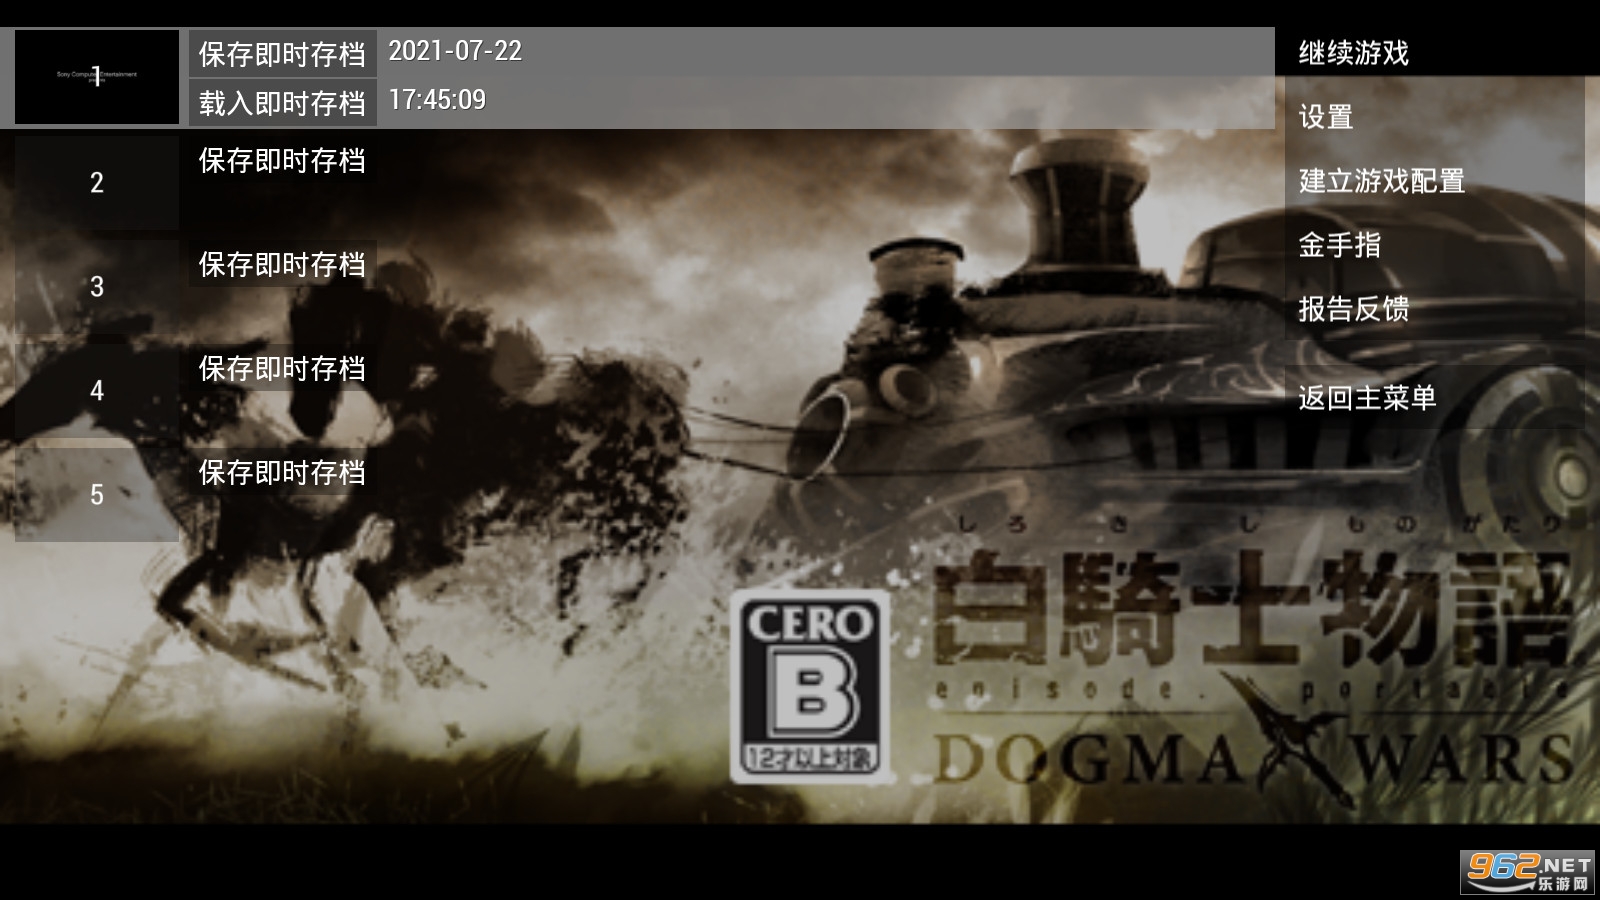 白骑士物语德古玛战争PSP模拟器金手指PC移植版v1.10.3截图3